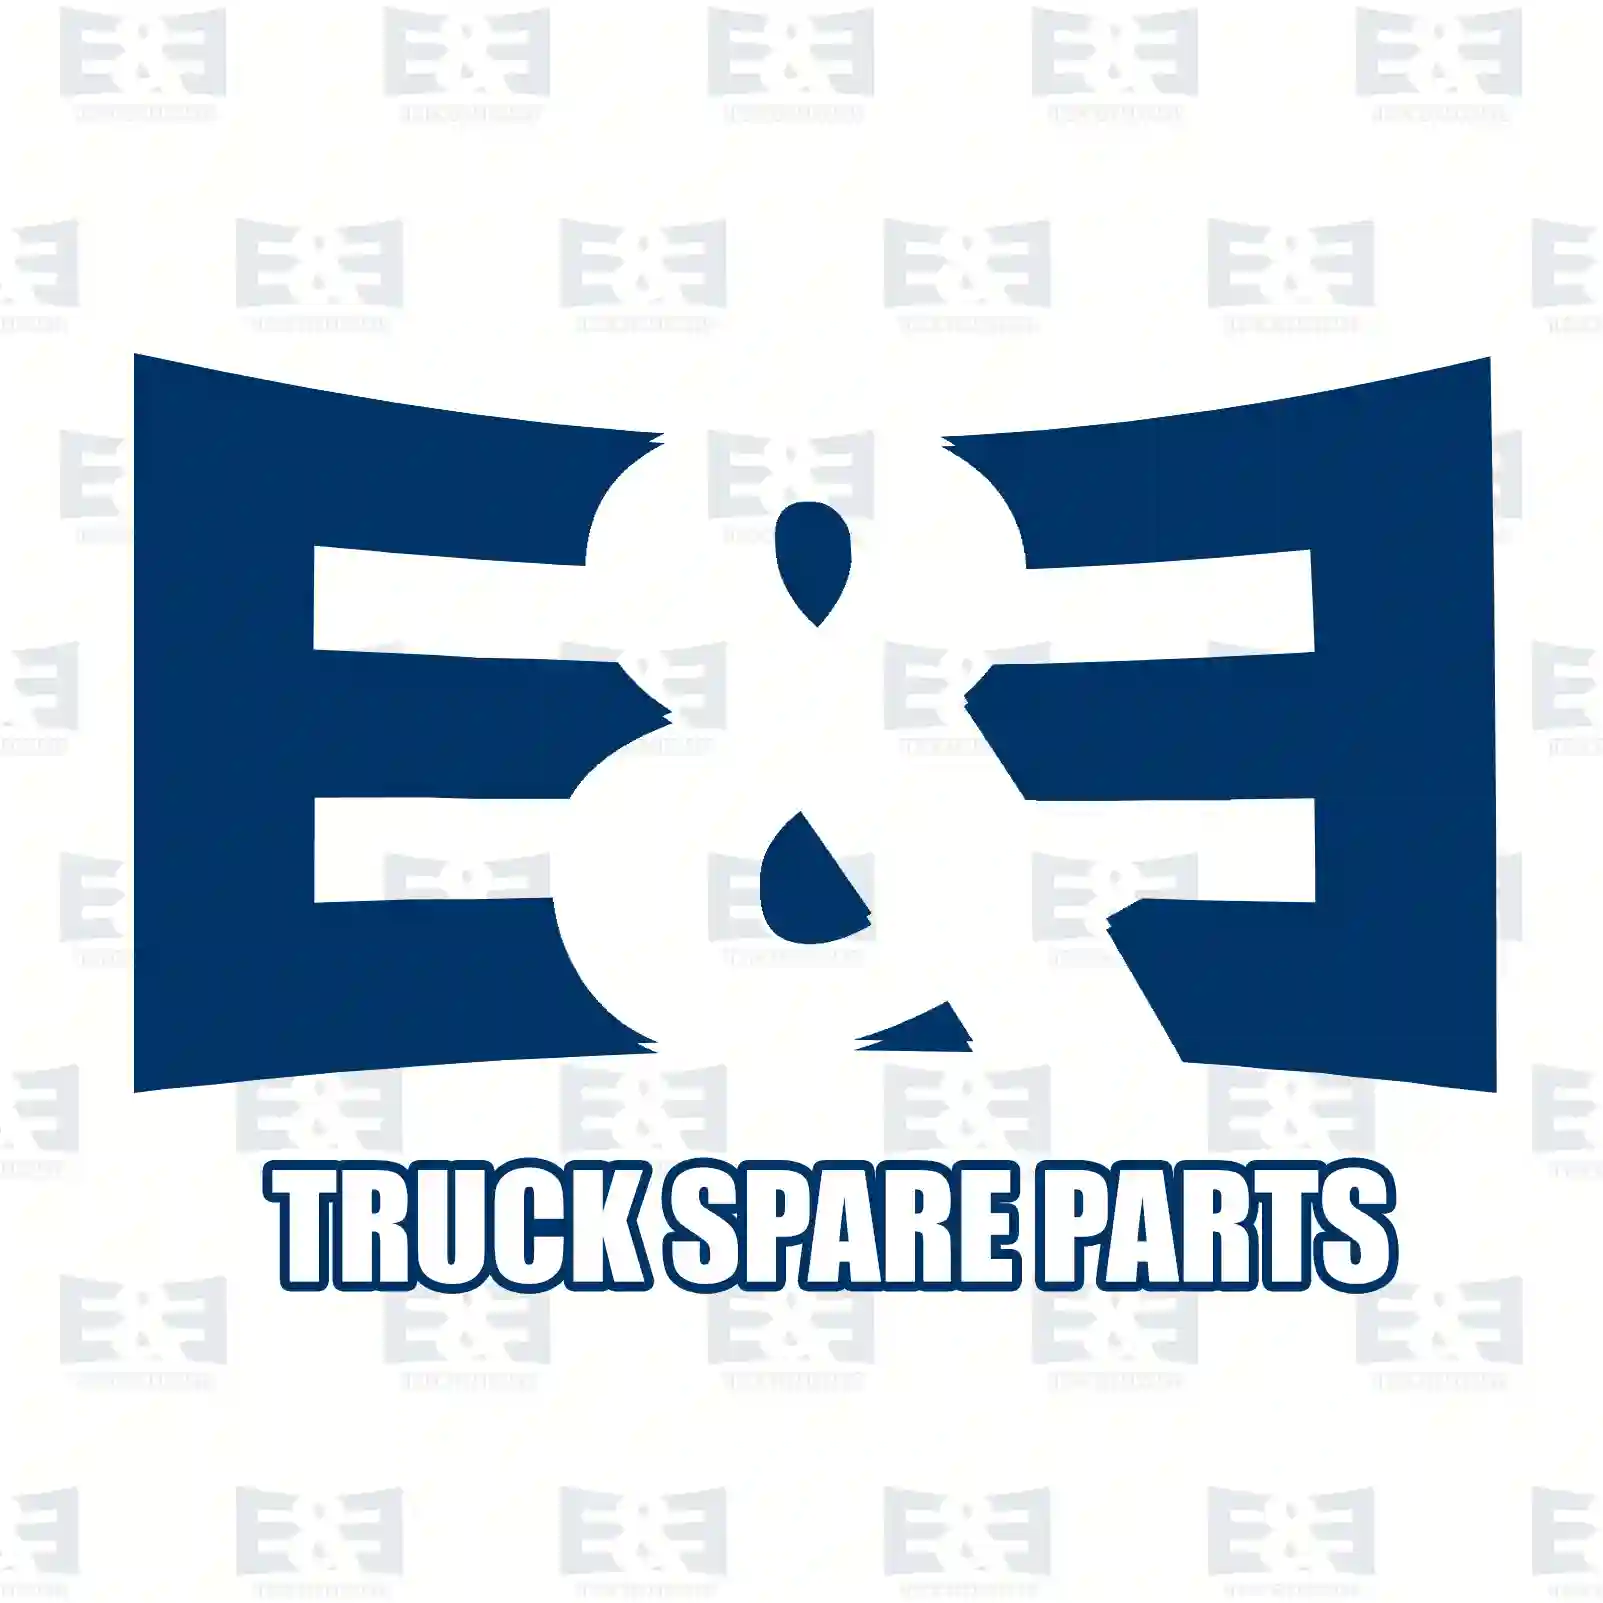 Bumper, rear, center, 2E2292403, 4054240, 4658088, YC15-17E962-ALYBB4 ||  2E2292403 E&E Truck Spare Parts | Truck Spare Parts, Auotomotive Spare Parts Bumper, rear, center, 2E2292403, 4054240, 4658088, YC15-17E962-ALYBB4 ||  2E2292403 E&E Truck Spare Parts | Truck Spare Parts, Auotomotive Spare Parts